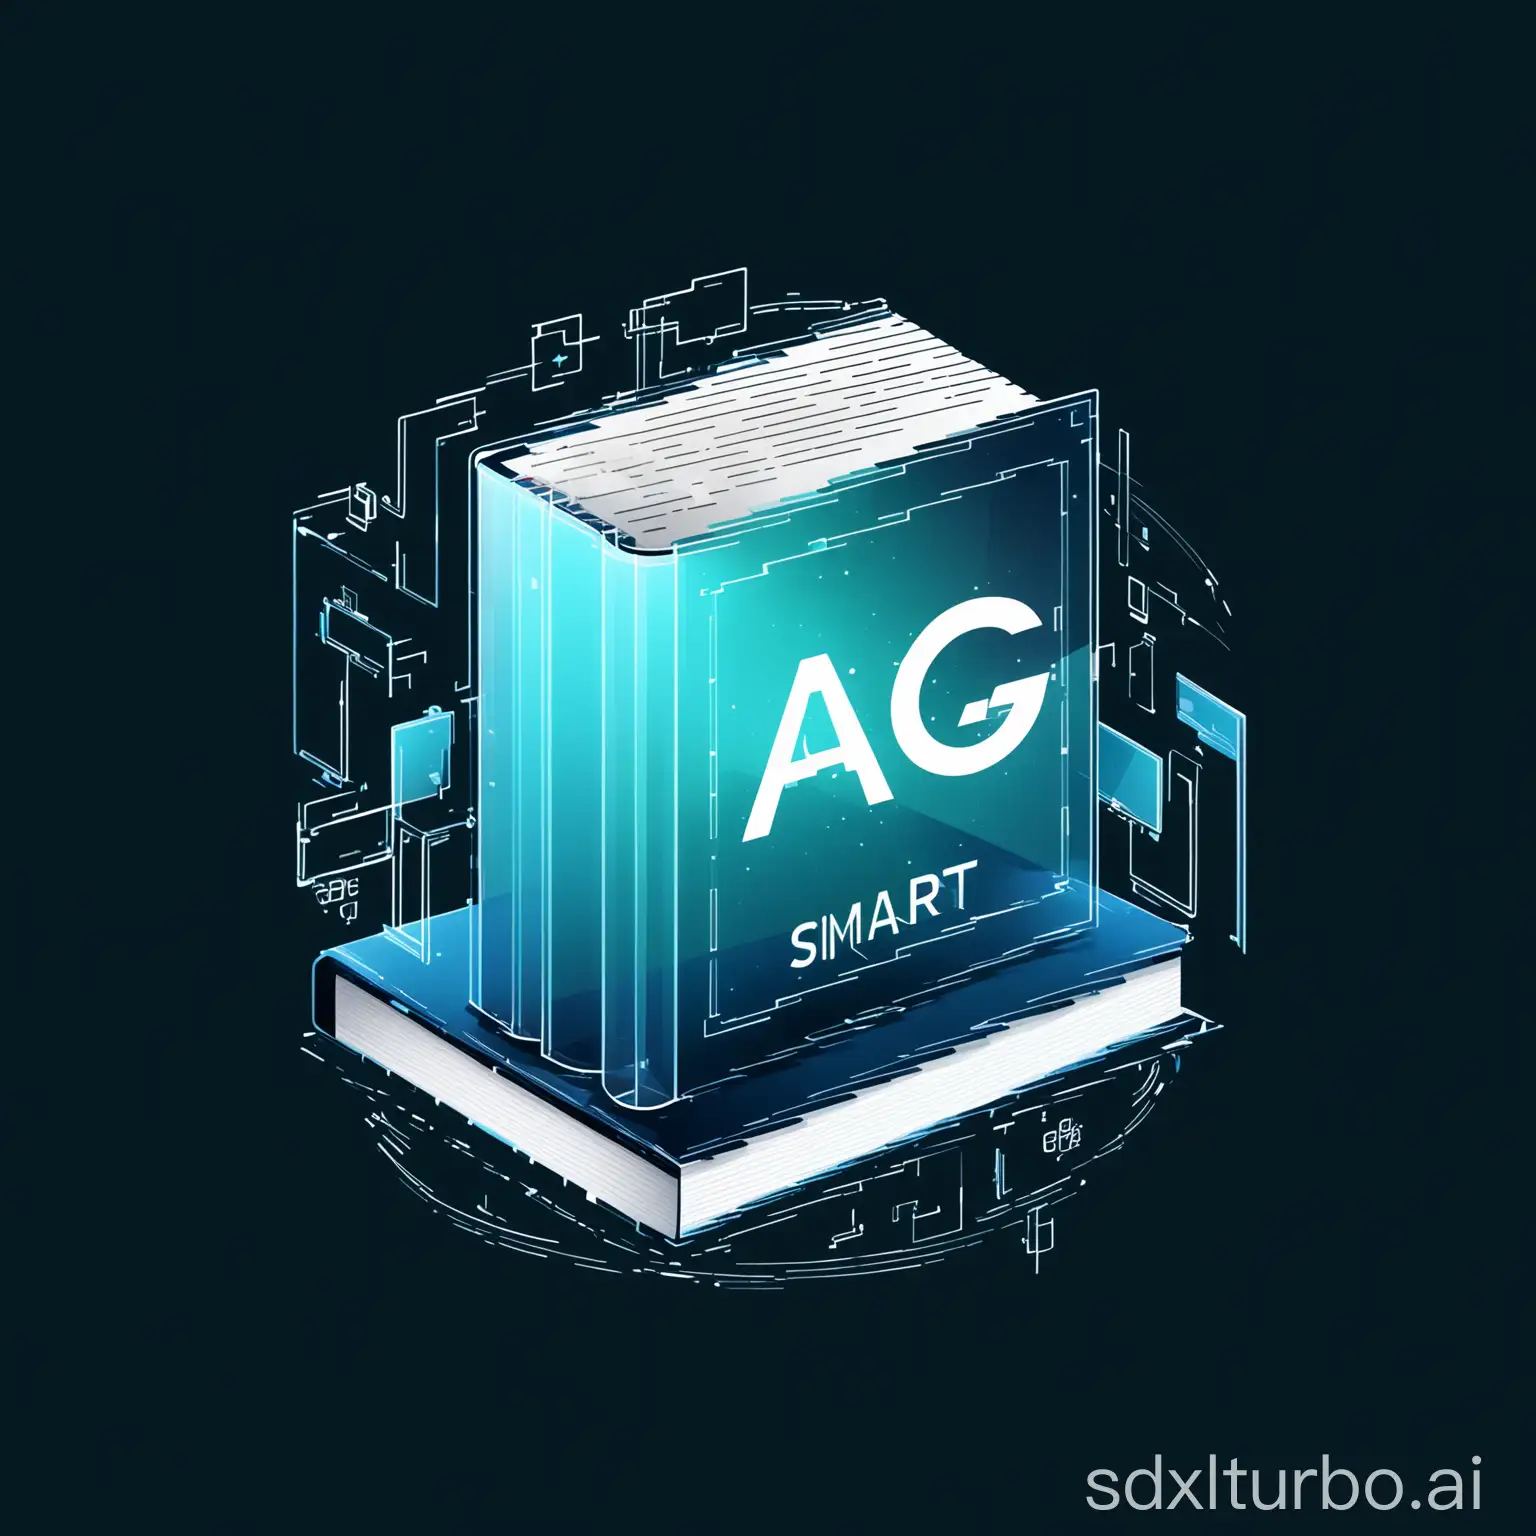  创作一个具有未来感的AIGC智能出版实验室logo：在中心位置，设计一个半透明的书本，上面有“AIGC”字母。背景透明，整个设计以简洁明了的线条和形状为主，易于识别且具有强烈的视觉冲击力。极简主义